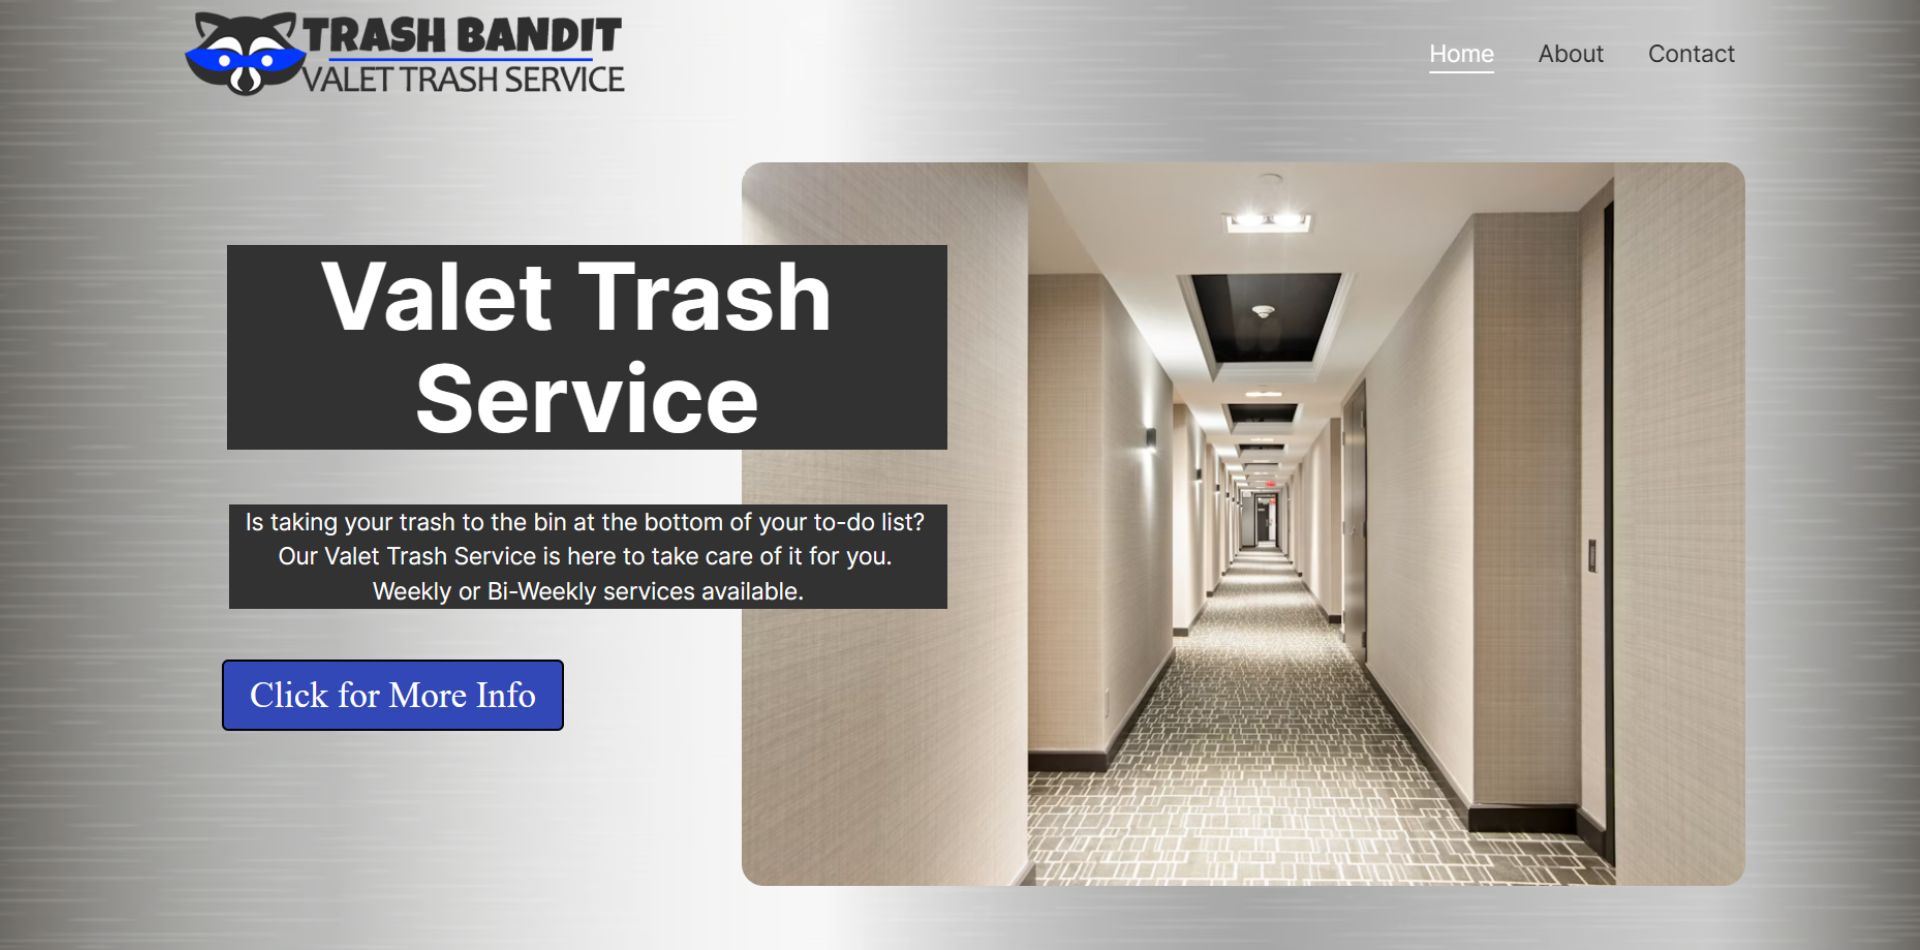 Trash Banit Website